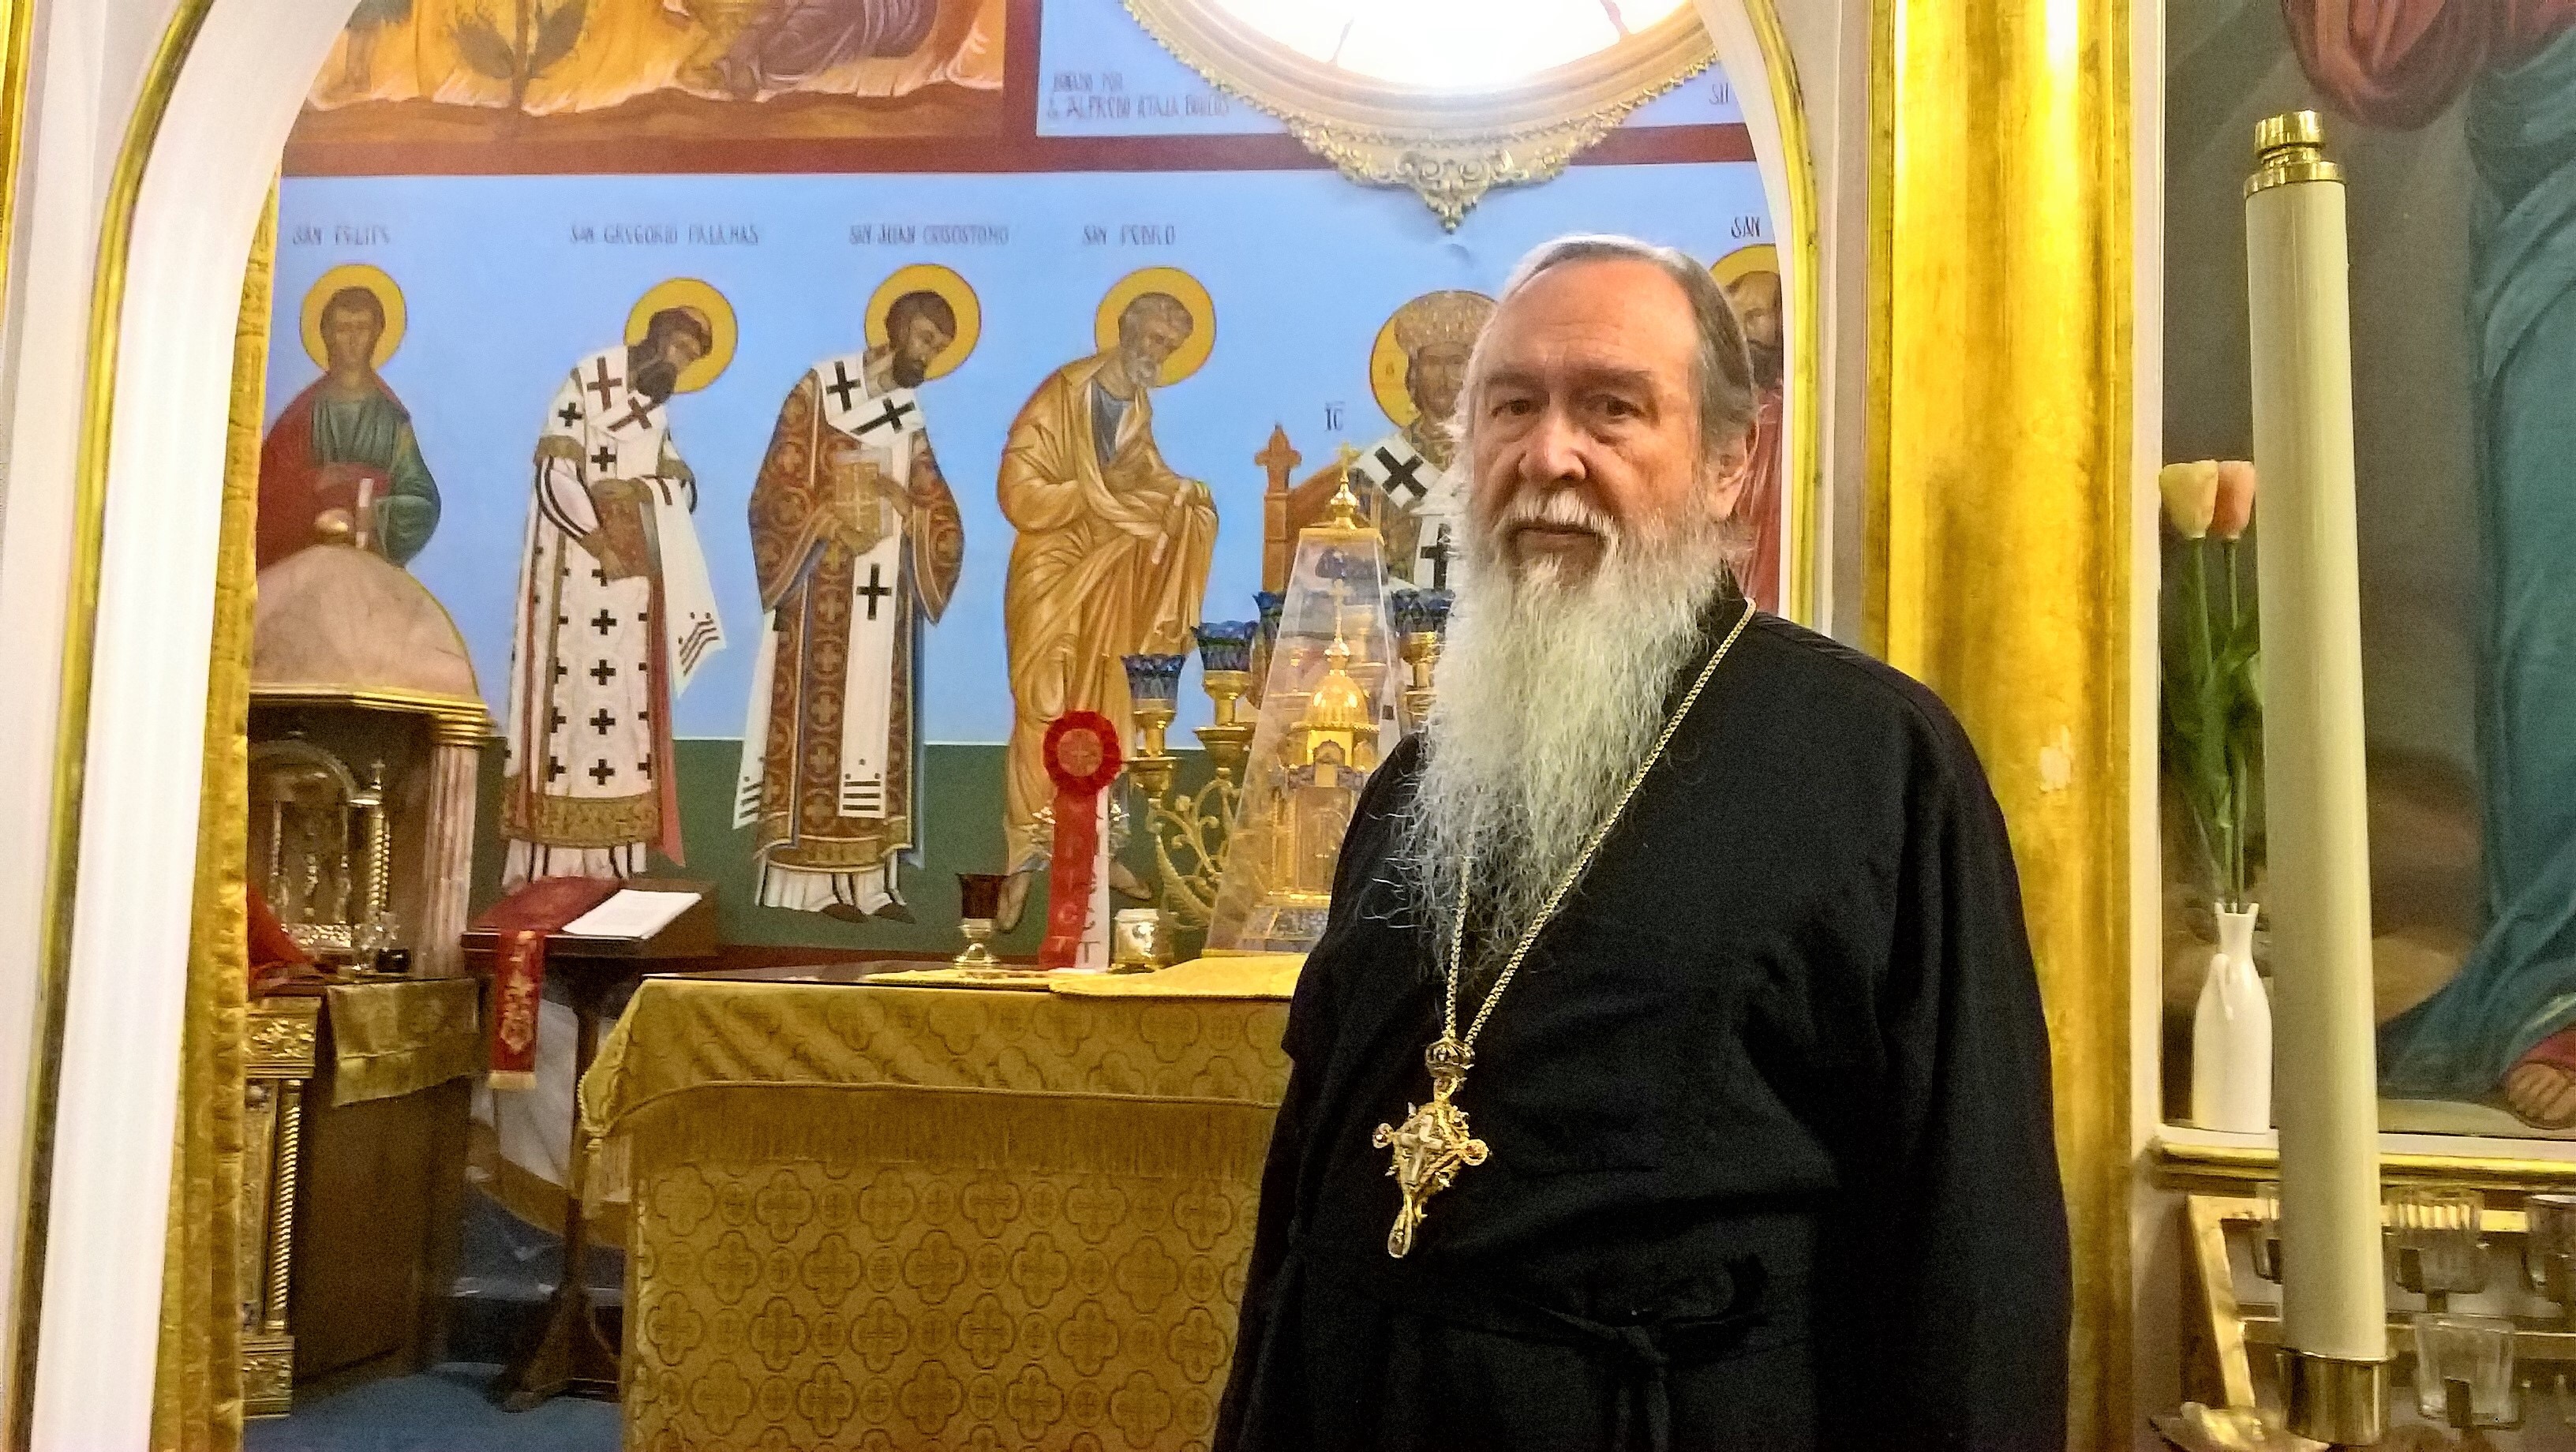 Padre Juan Peña Villanueva: “El nuevo Arzobispo debe engrandecer a la Iglesia Ortodoxa de Antioquía”